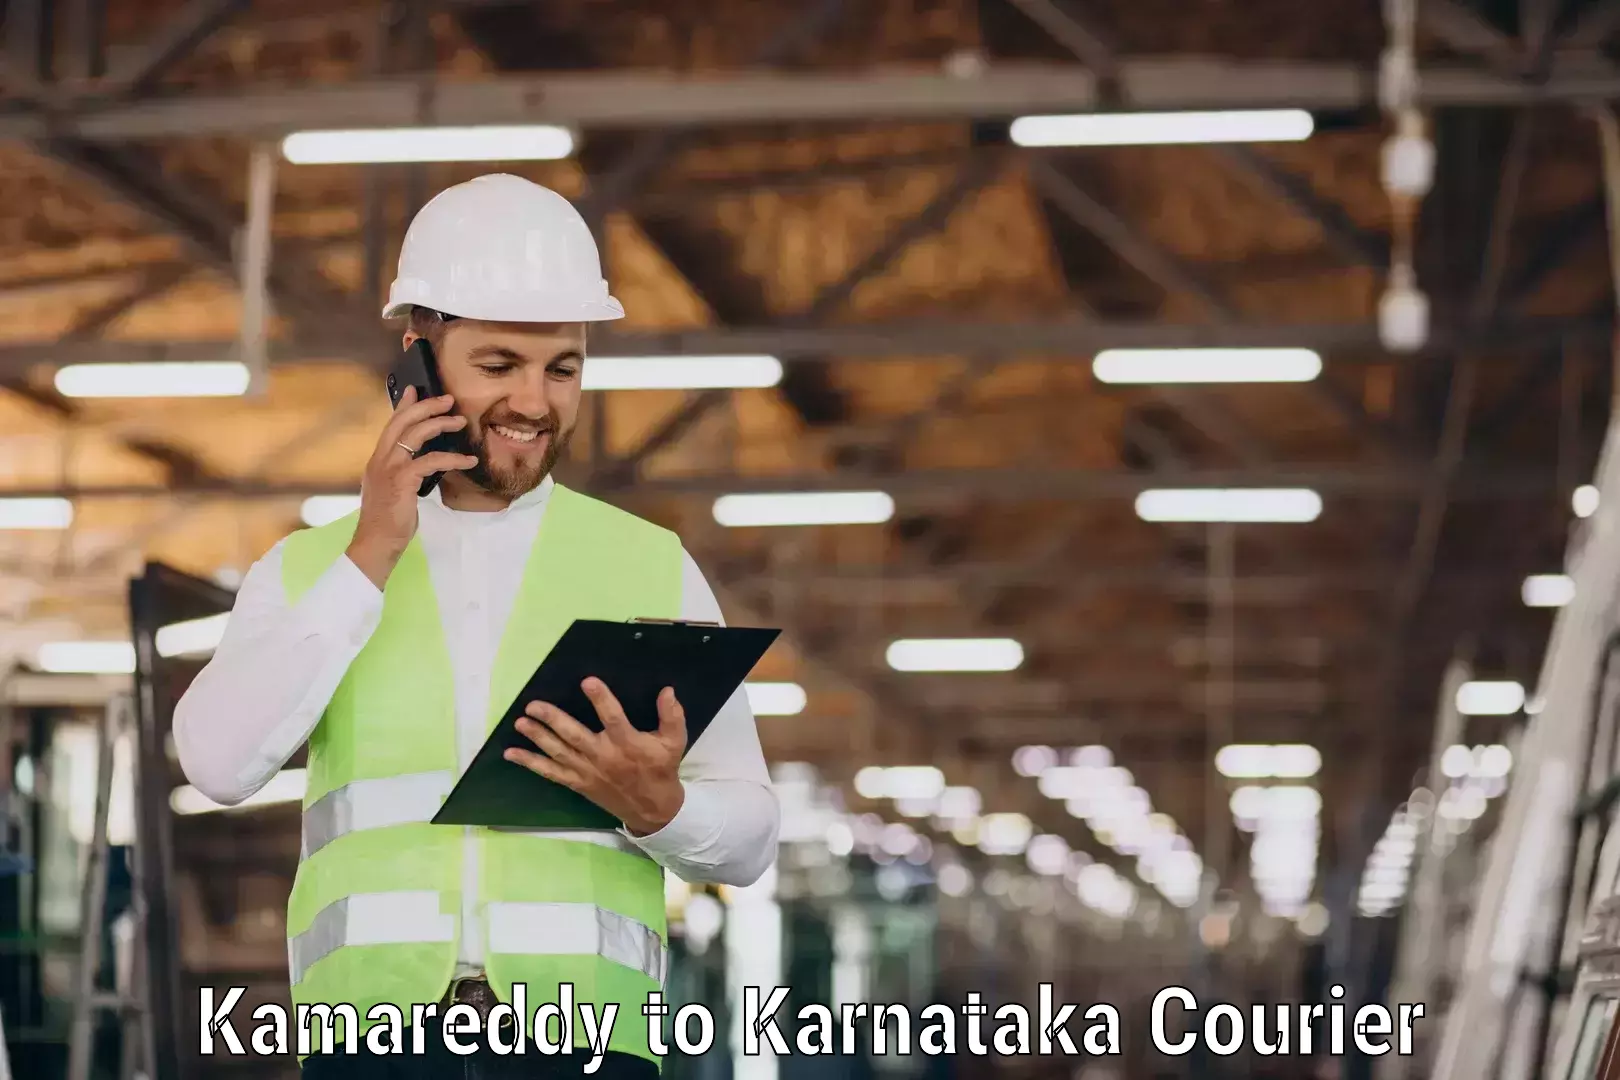 Track and trace shipping Kamareddy to Kanakapura